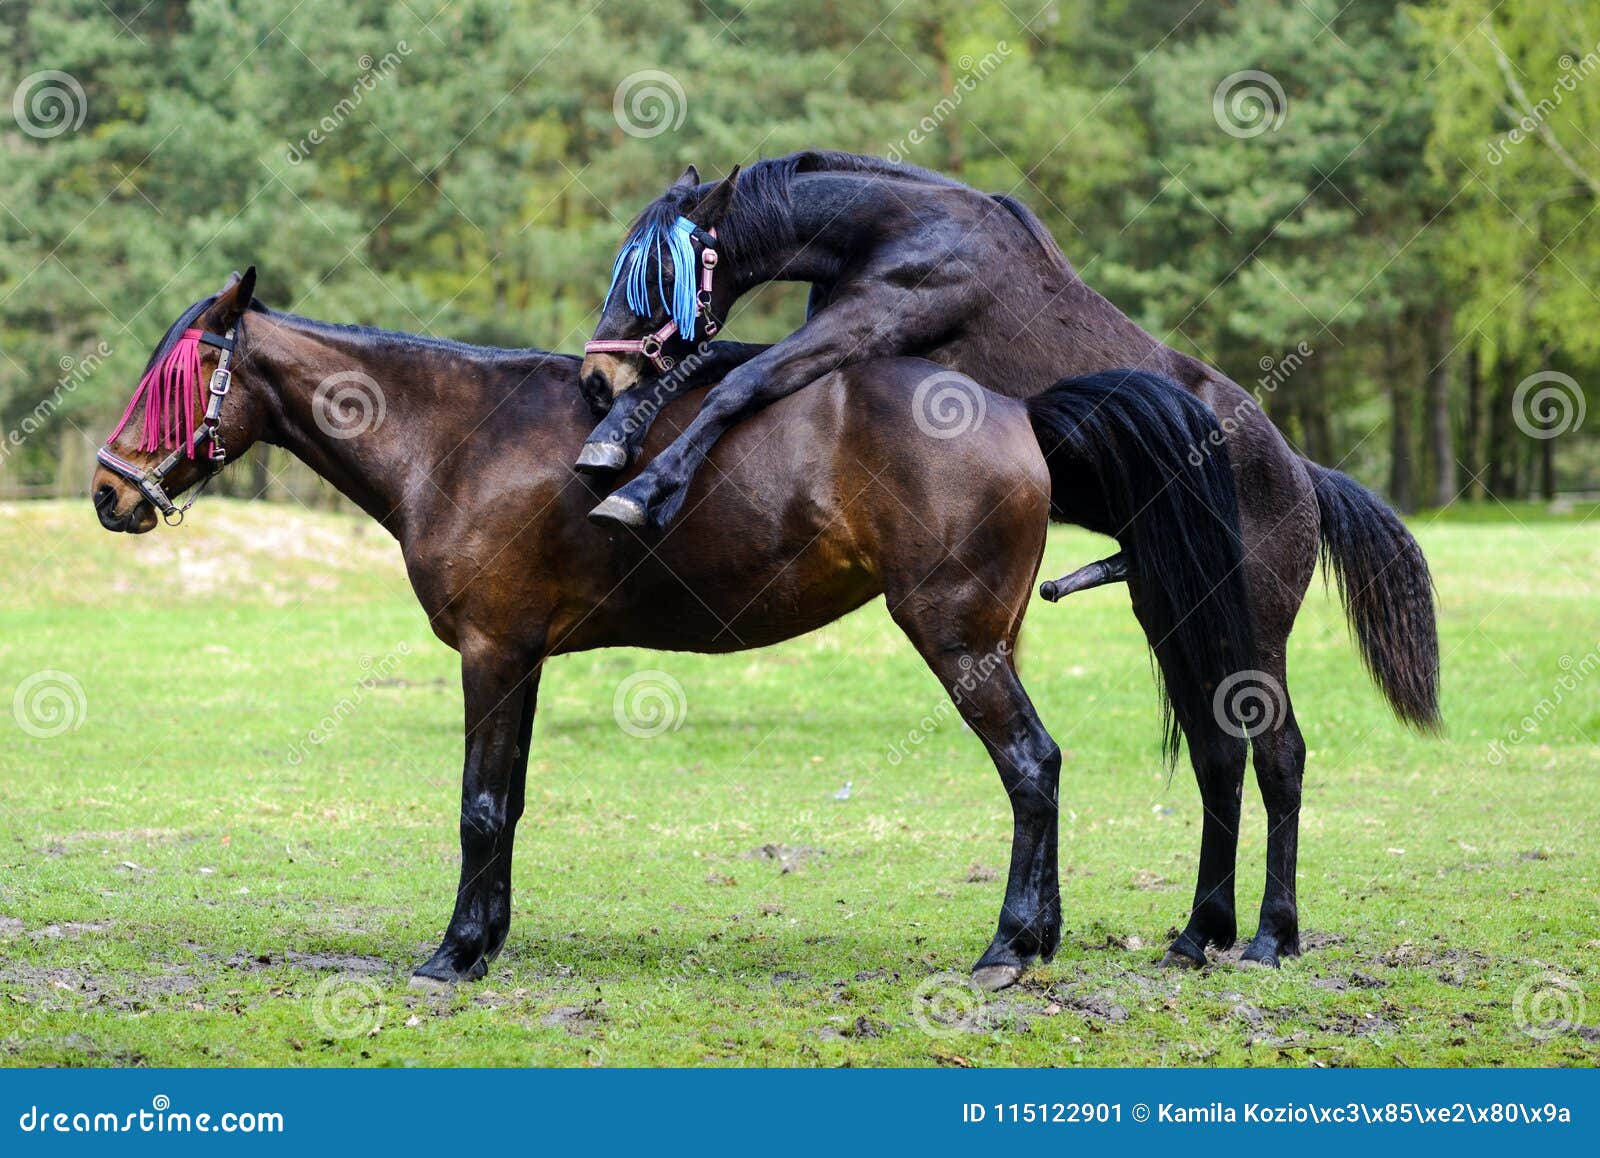 Hombres teniendo sexo con caballos